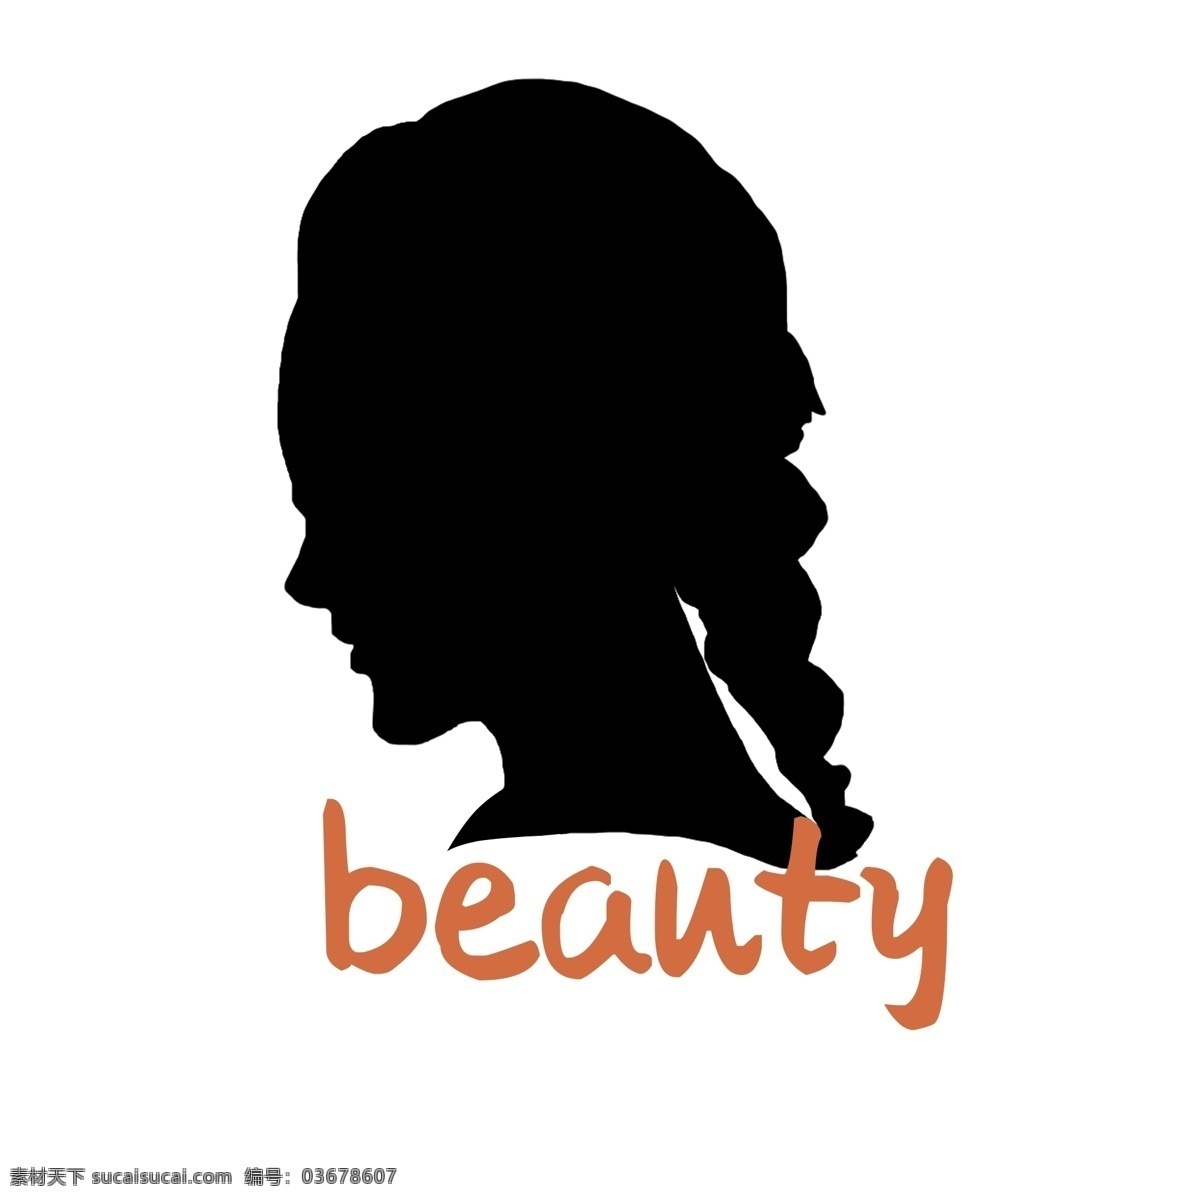 少女剪影 logo设计 女性侧颜 发型 美发沙龙 医疗美容 女性侧脸剪影 美容美发美妆 马尾辫 美容 logo